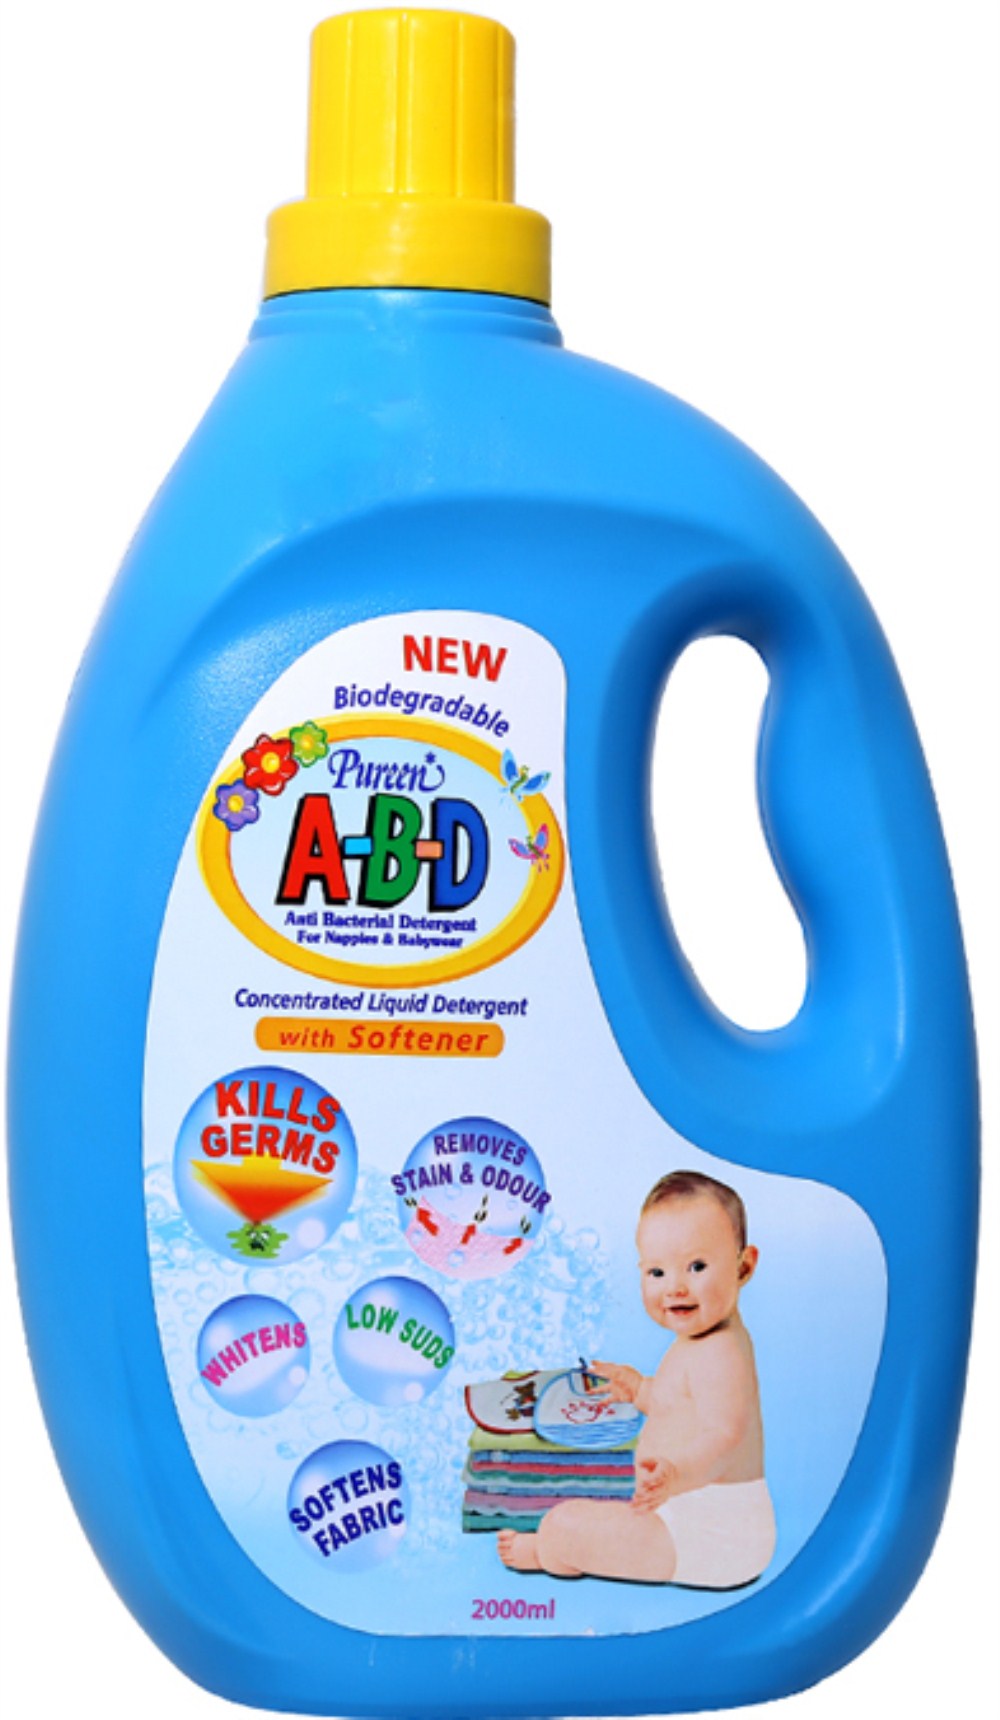 Nước giặt xả quần áo trẻ sơ sinh Pureen A-B-D chai 2 lít